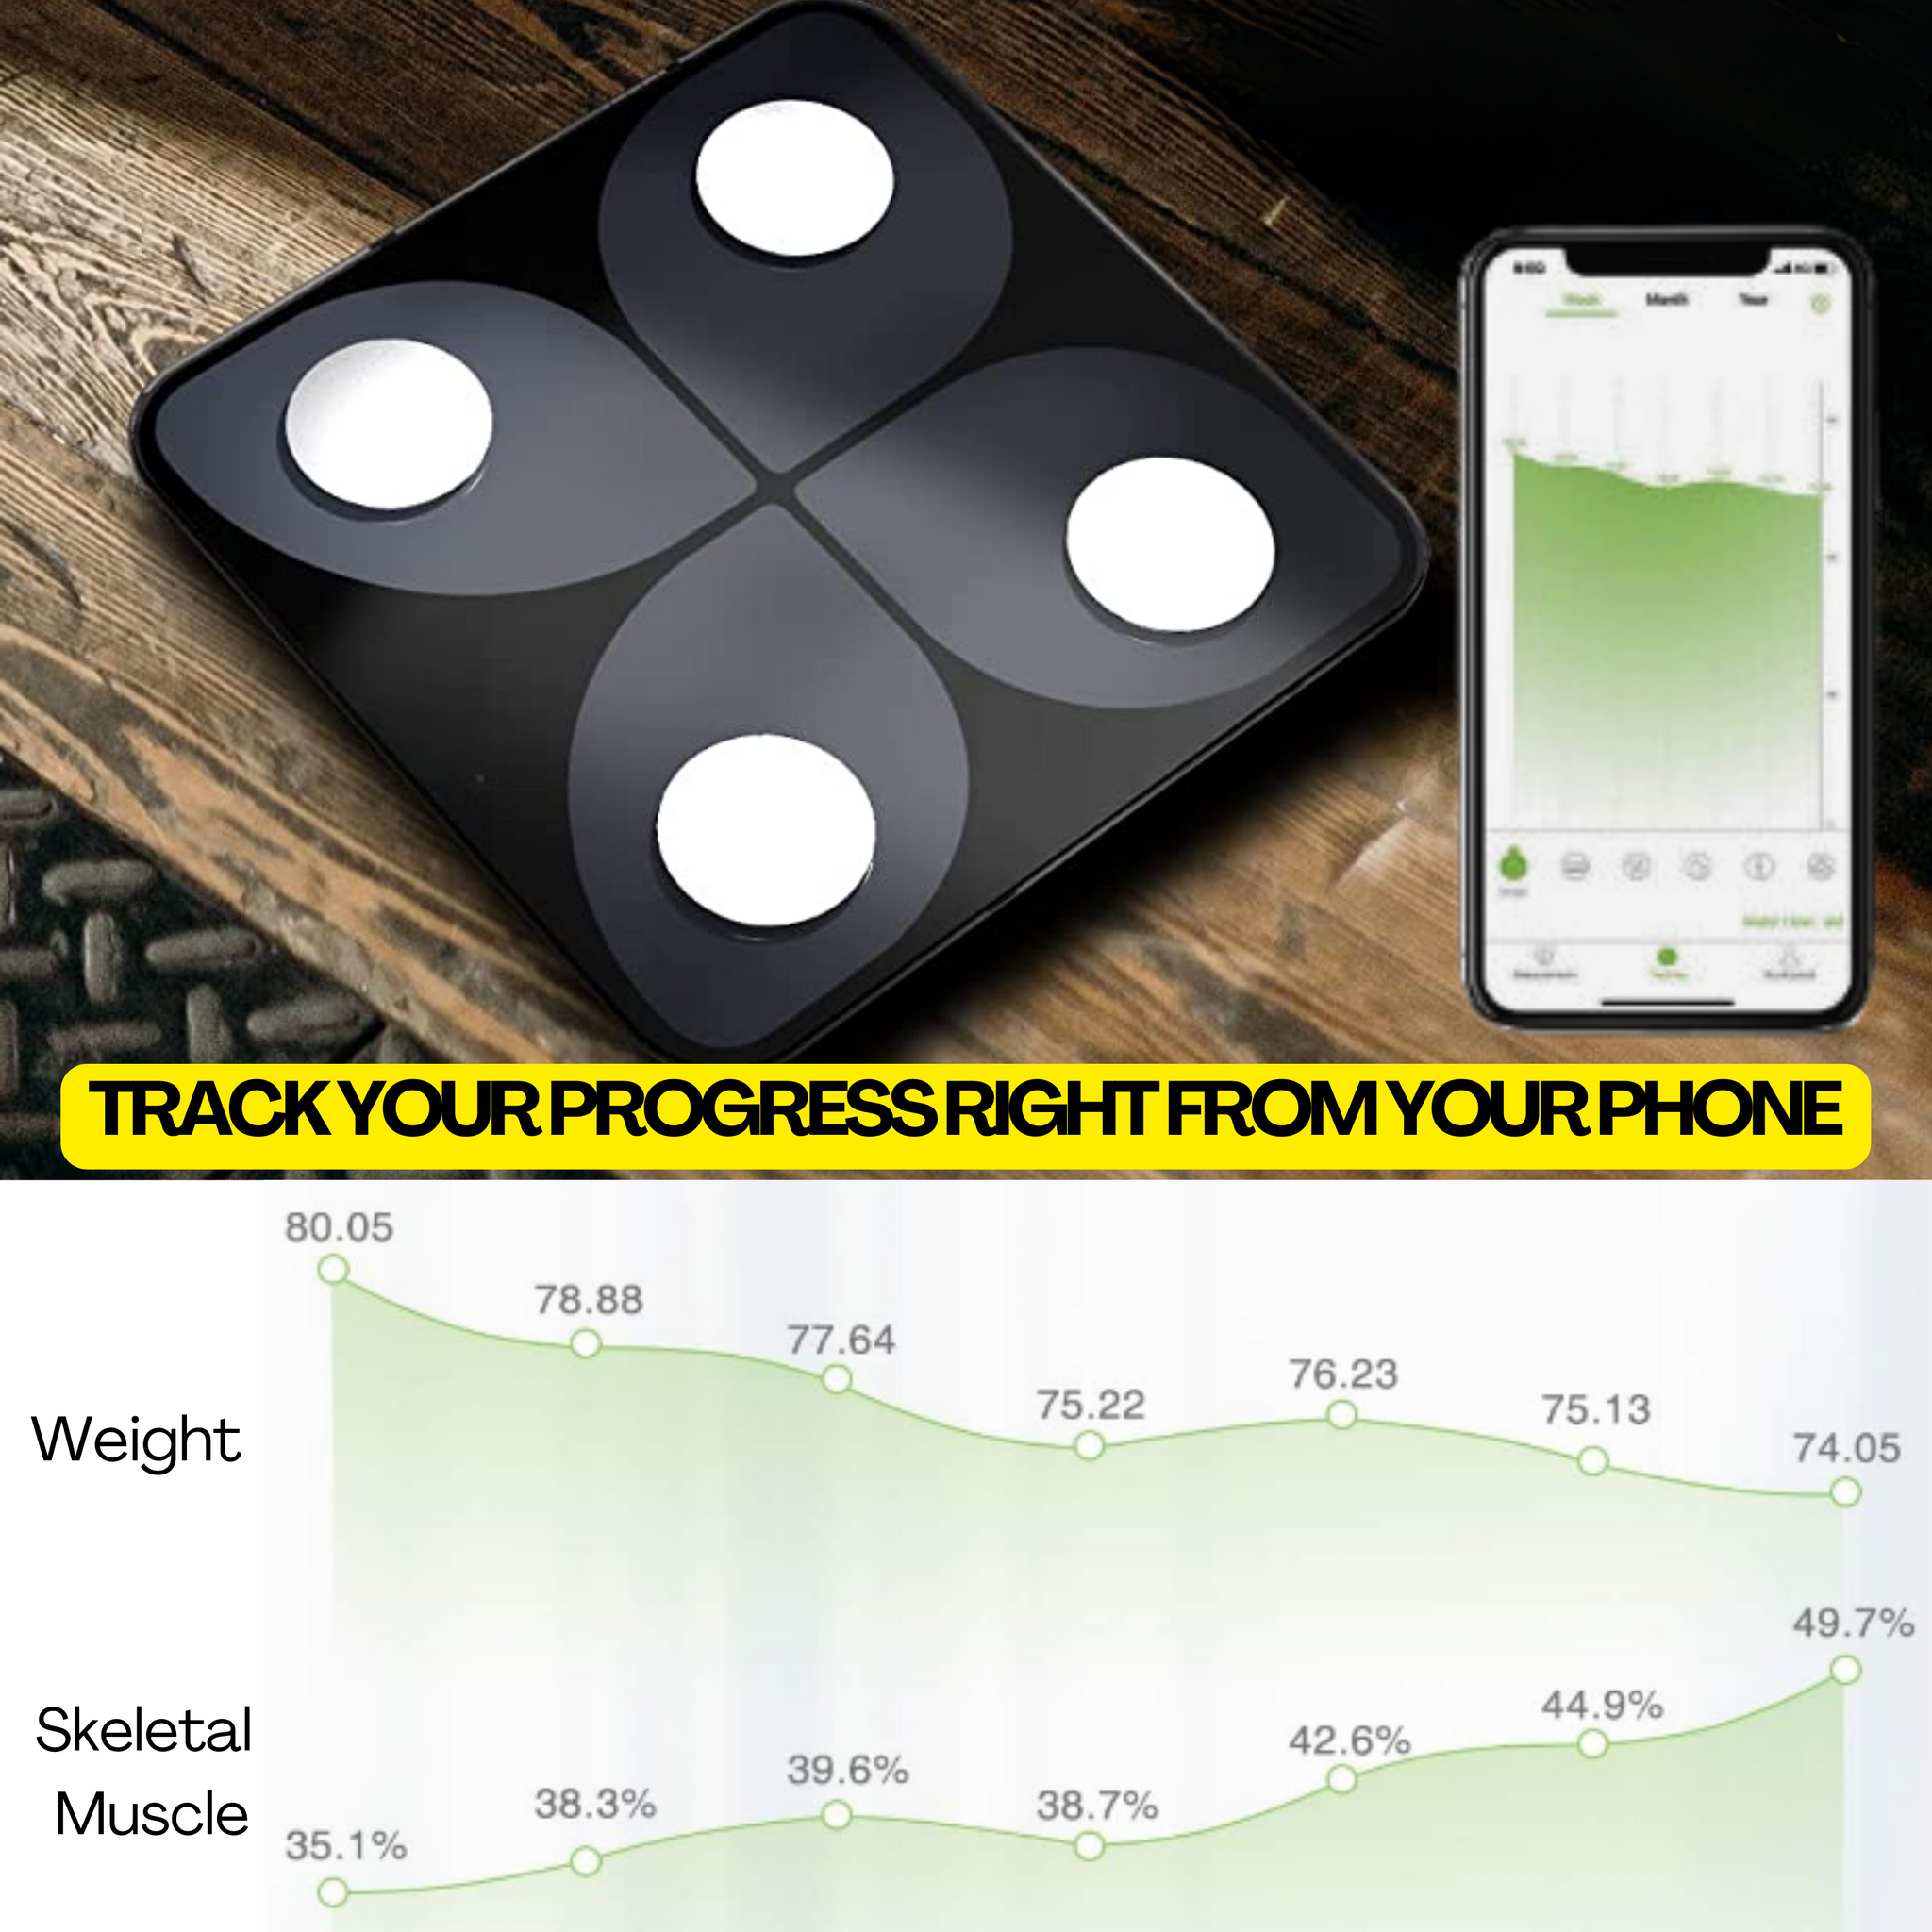 Balance intelligente Bluetooth - Mesure la graisse corporelle, l'IMC, la masse musculaire et plus encore